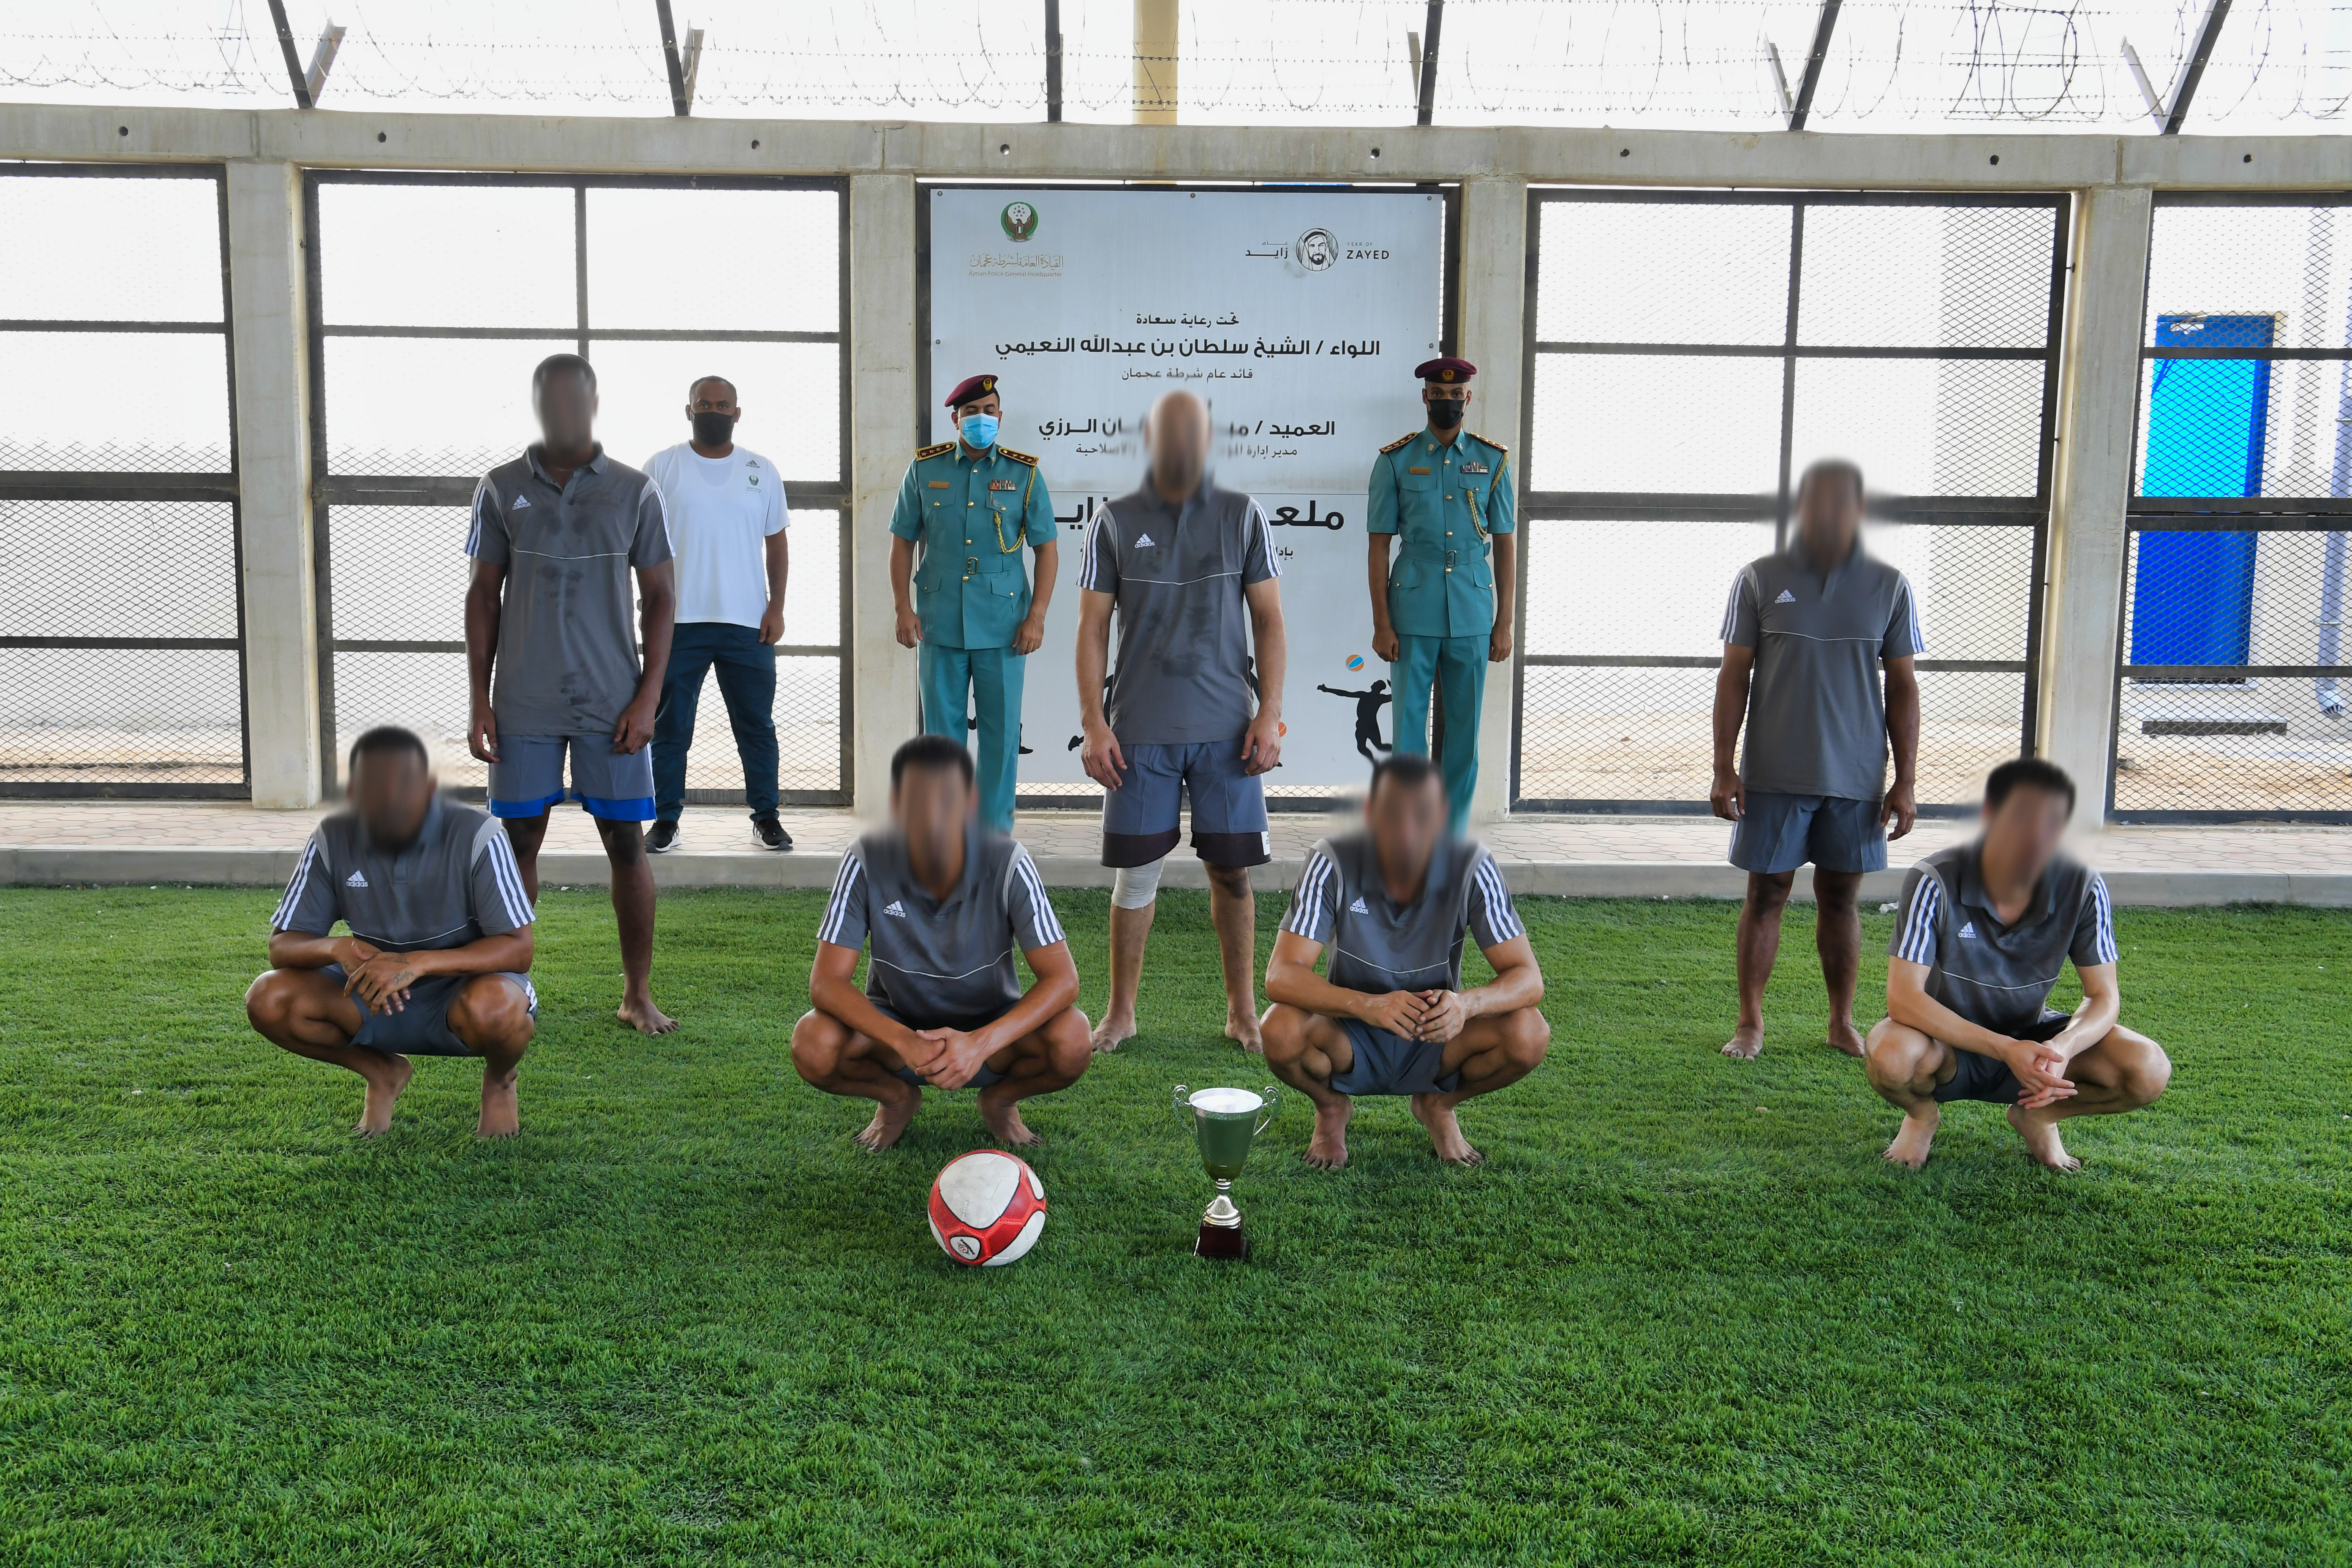 شرطة عجمان تعزز اللياقة البدنية لنزلاء المؤسسة العقابية والإصلاحية بتنظيم بطولة كرة القدم لعام 2020  